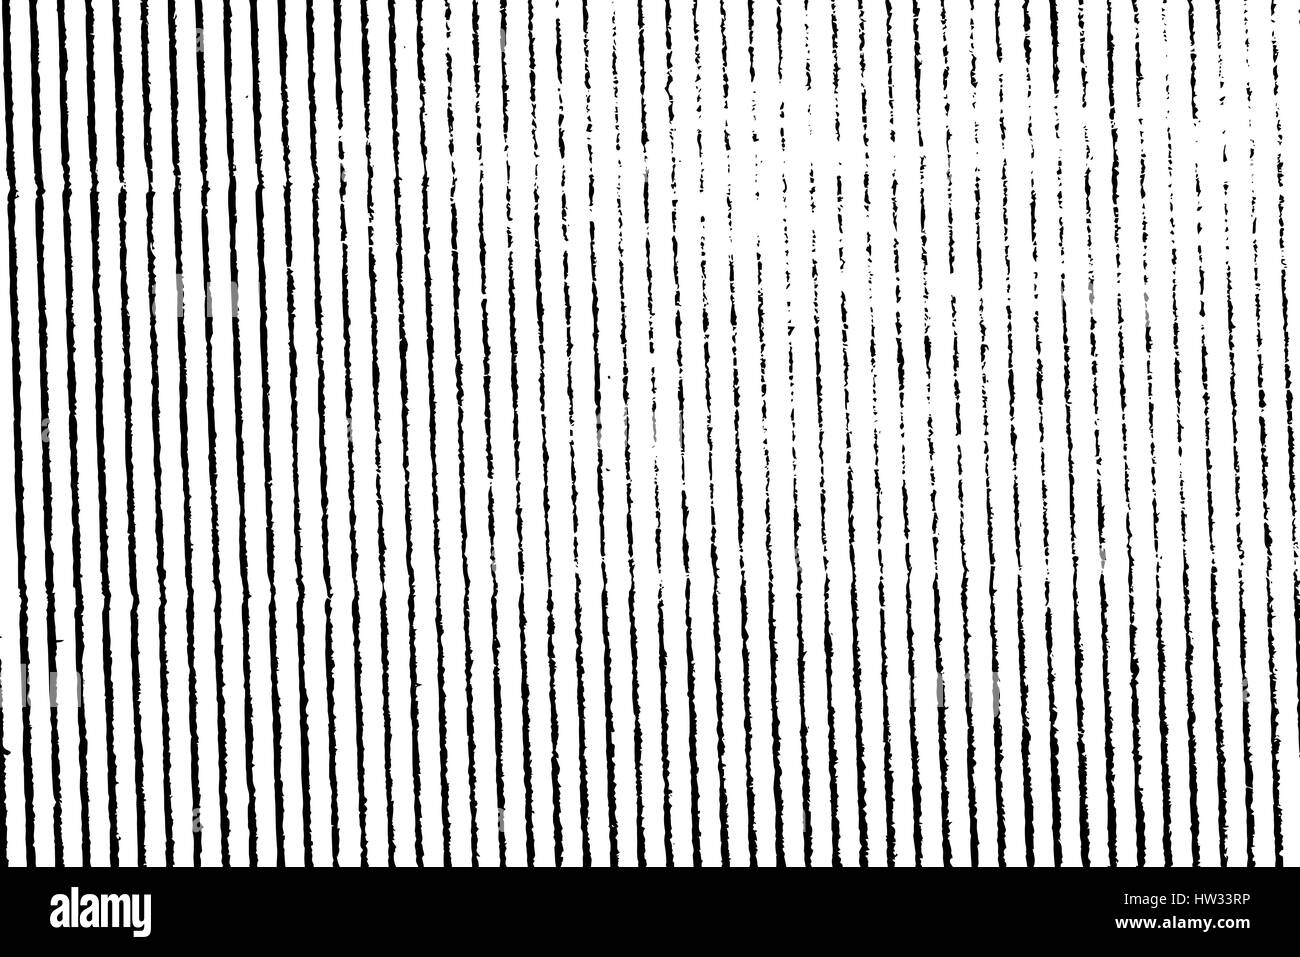 Texture grunge isolé du matériel géométrique en noir et blanc, vintage background ressource. Vecteur EPS10. Illustration de Vecteur